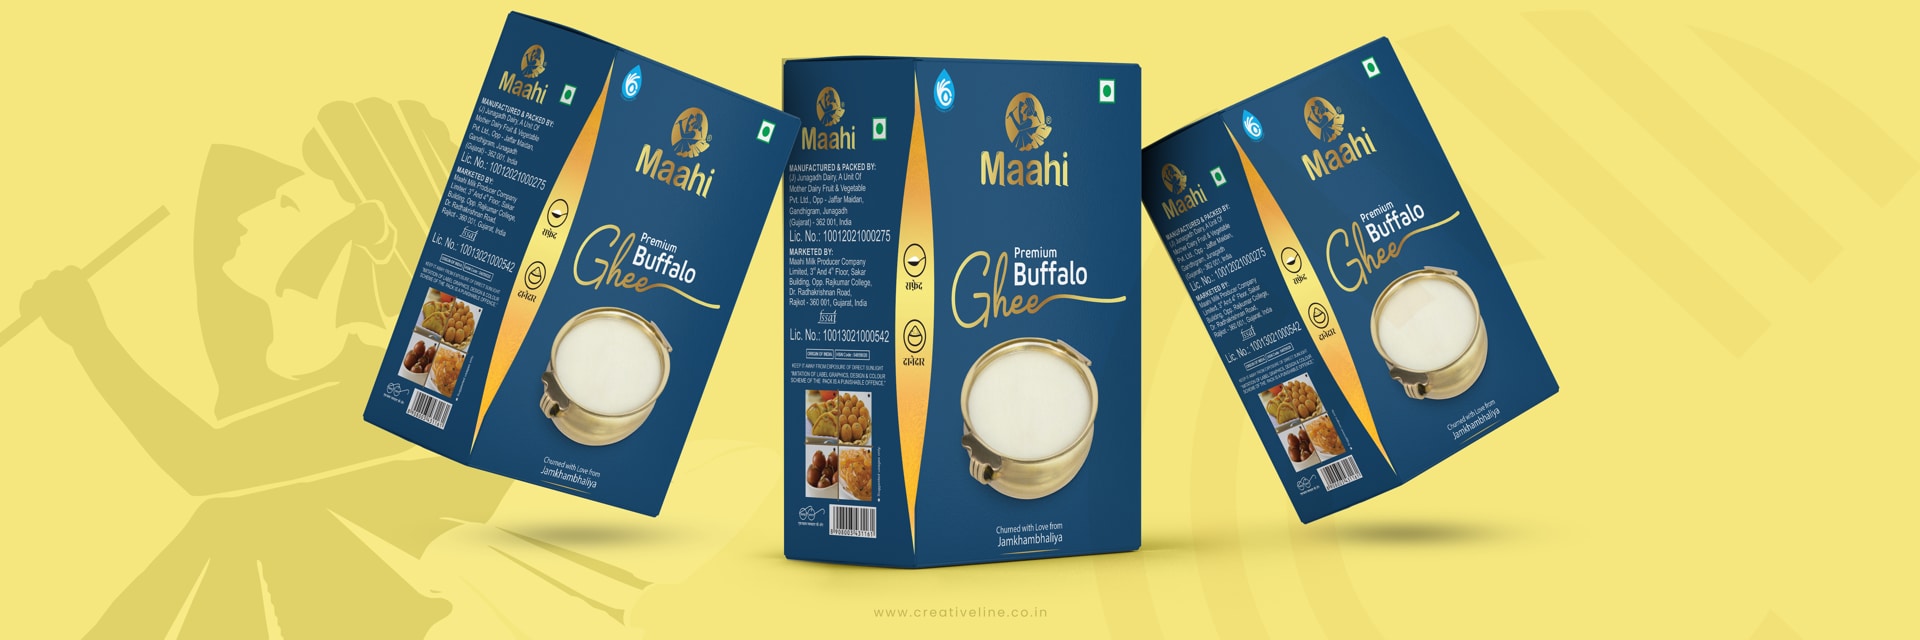 ghee Brand packaging Design Agency Creativeline Gandhinagar ahmedabad